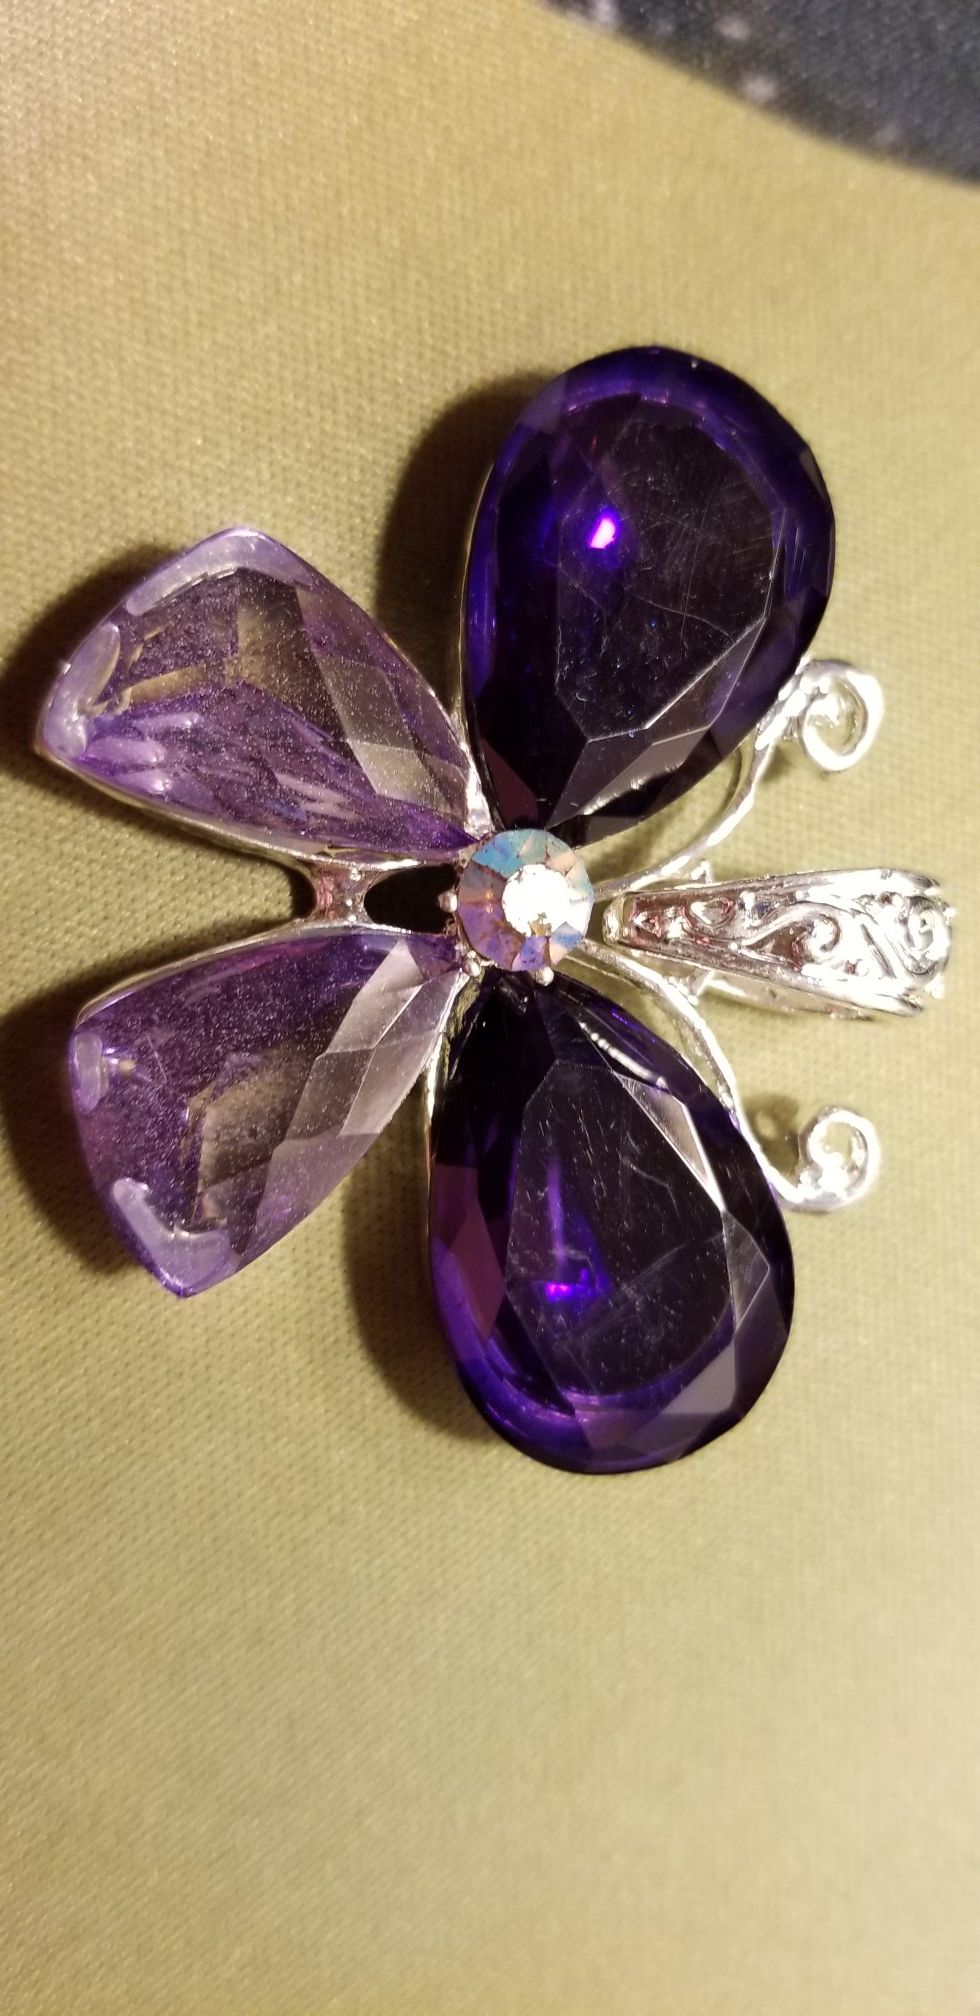 Purple Crystal Butterfly Pendant